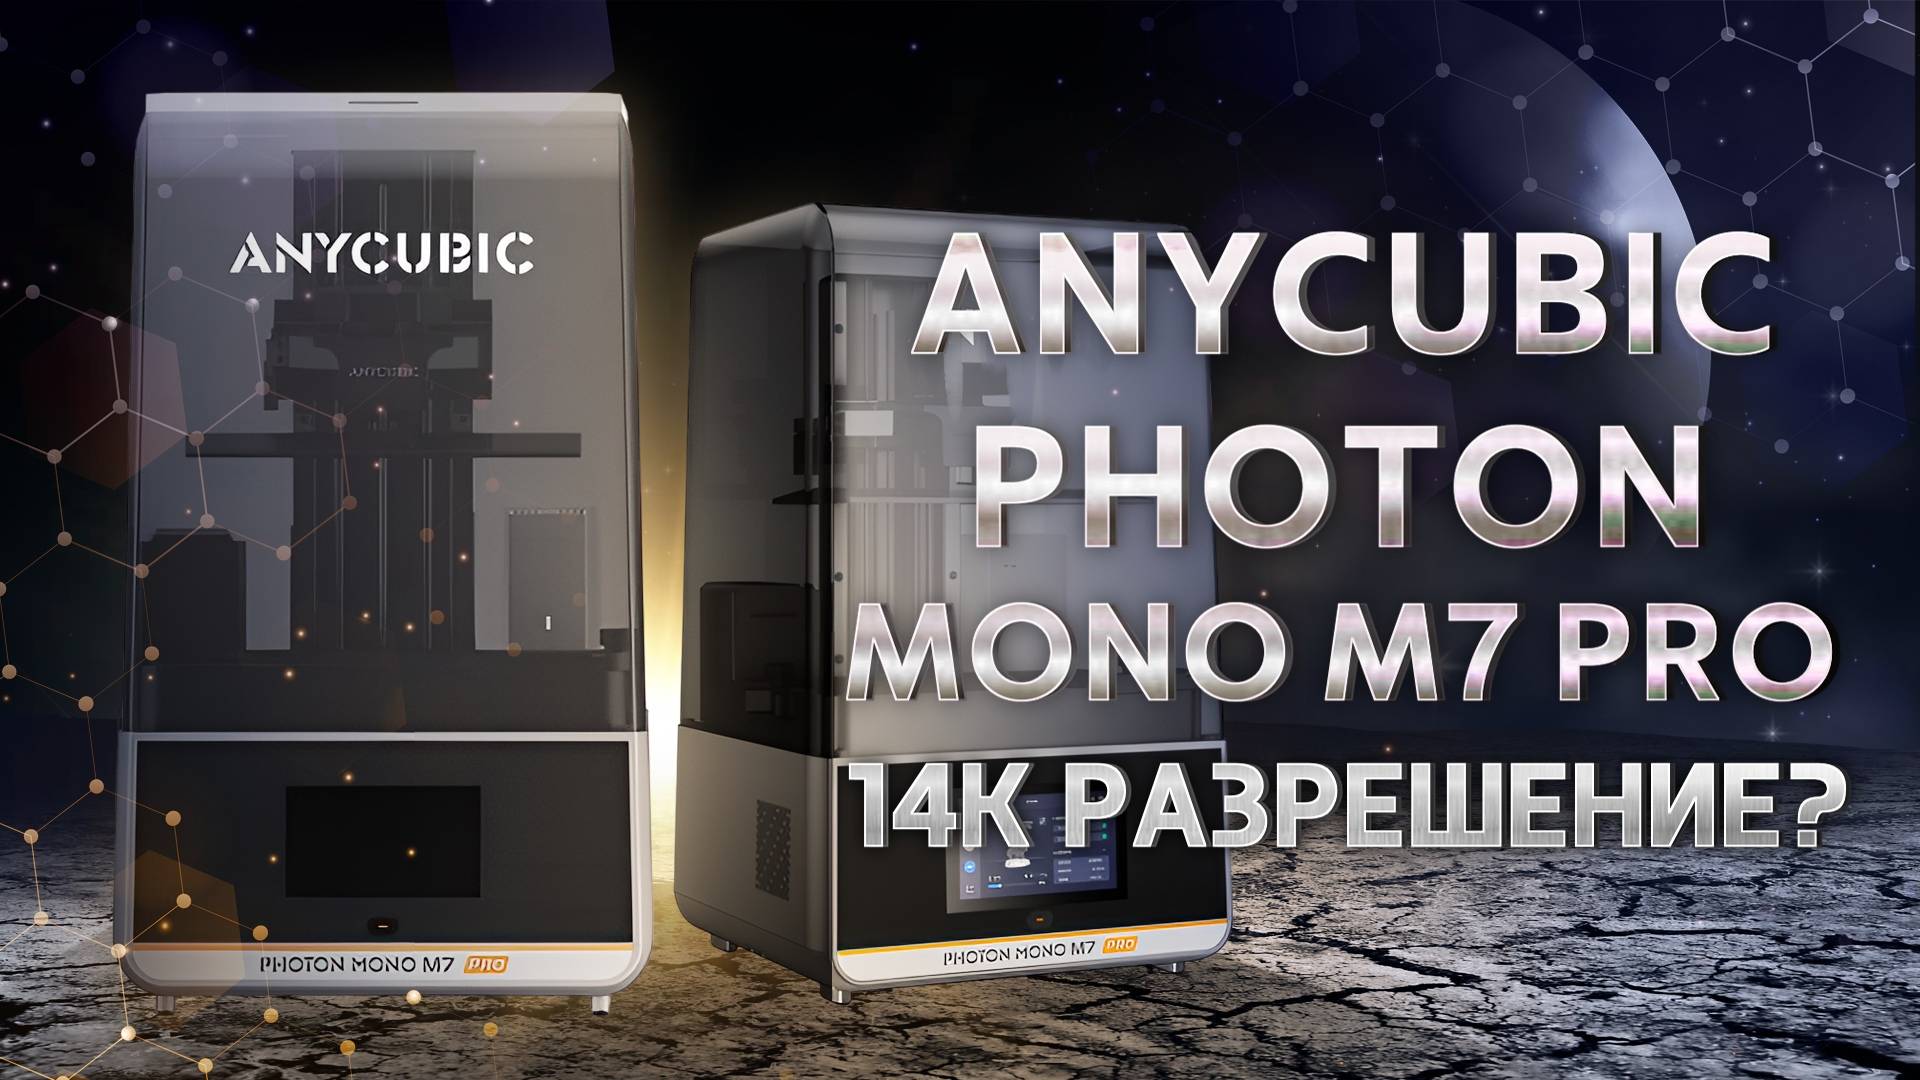 Обзор Anycubic Photon Mono M7 Pro быстрая печать в 14K